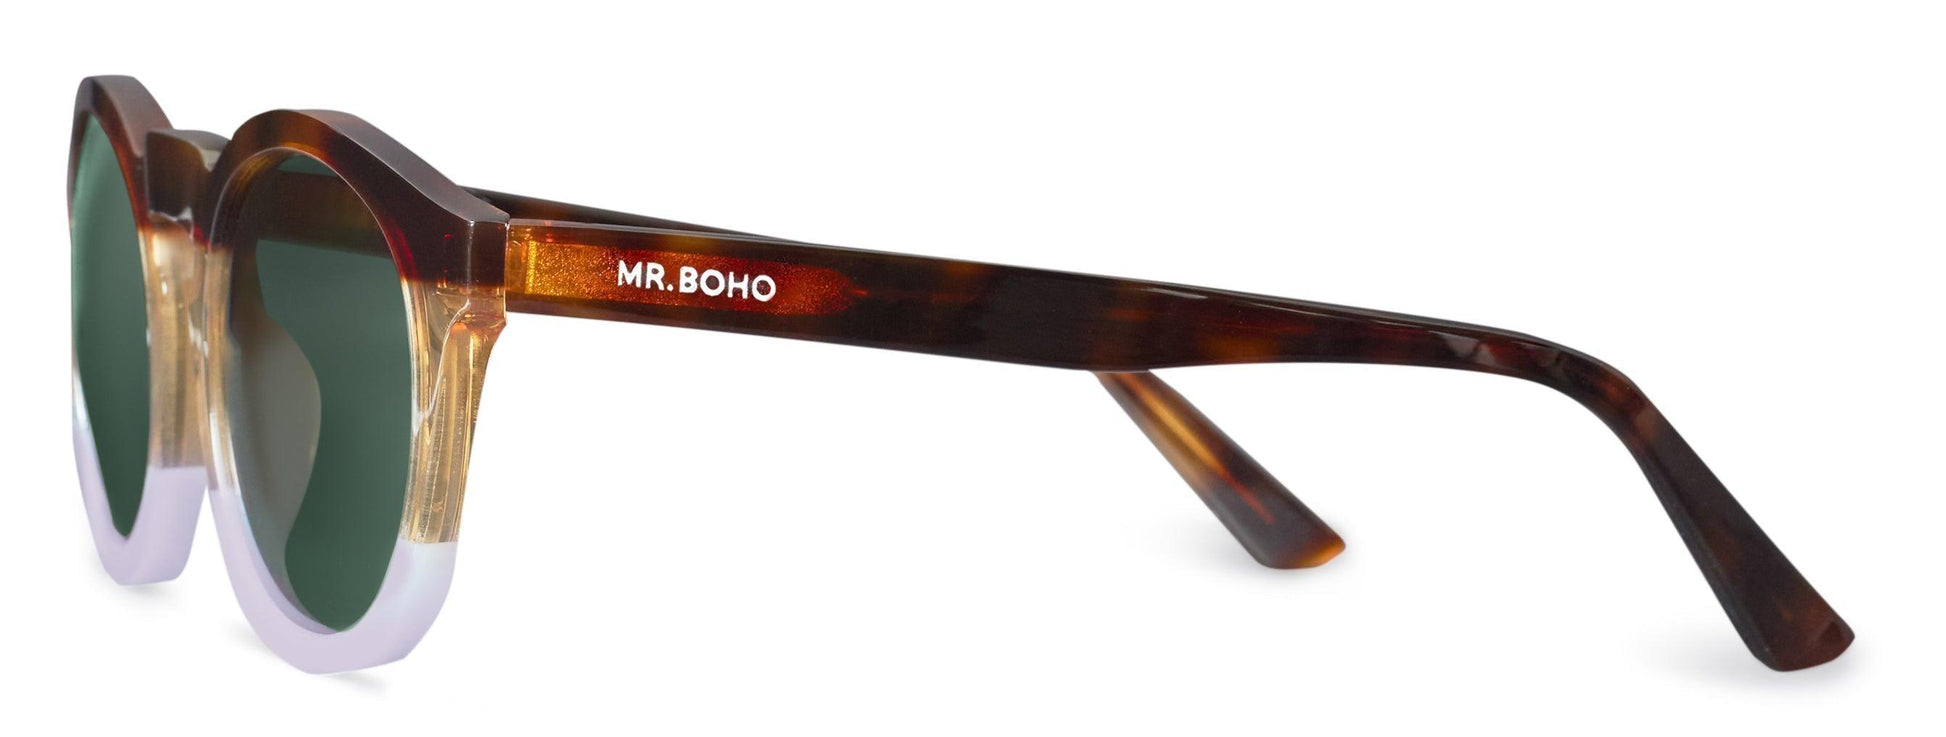 Mr Boho gafas de sol jordaan ⋆ La Urbana Store